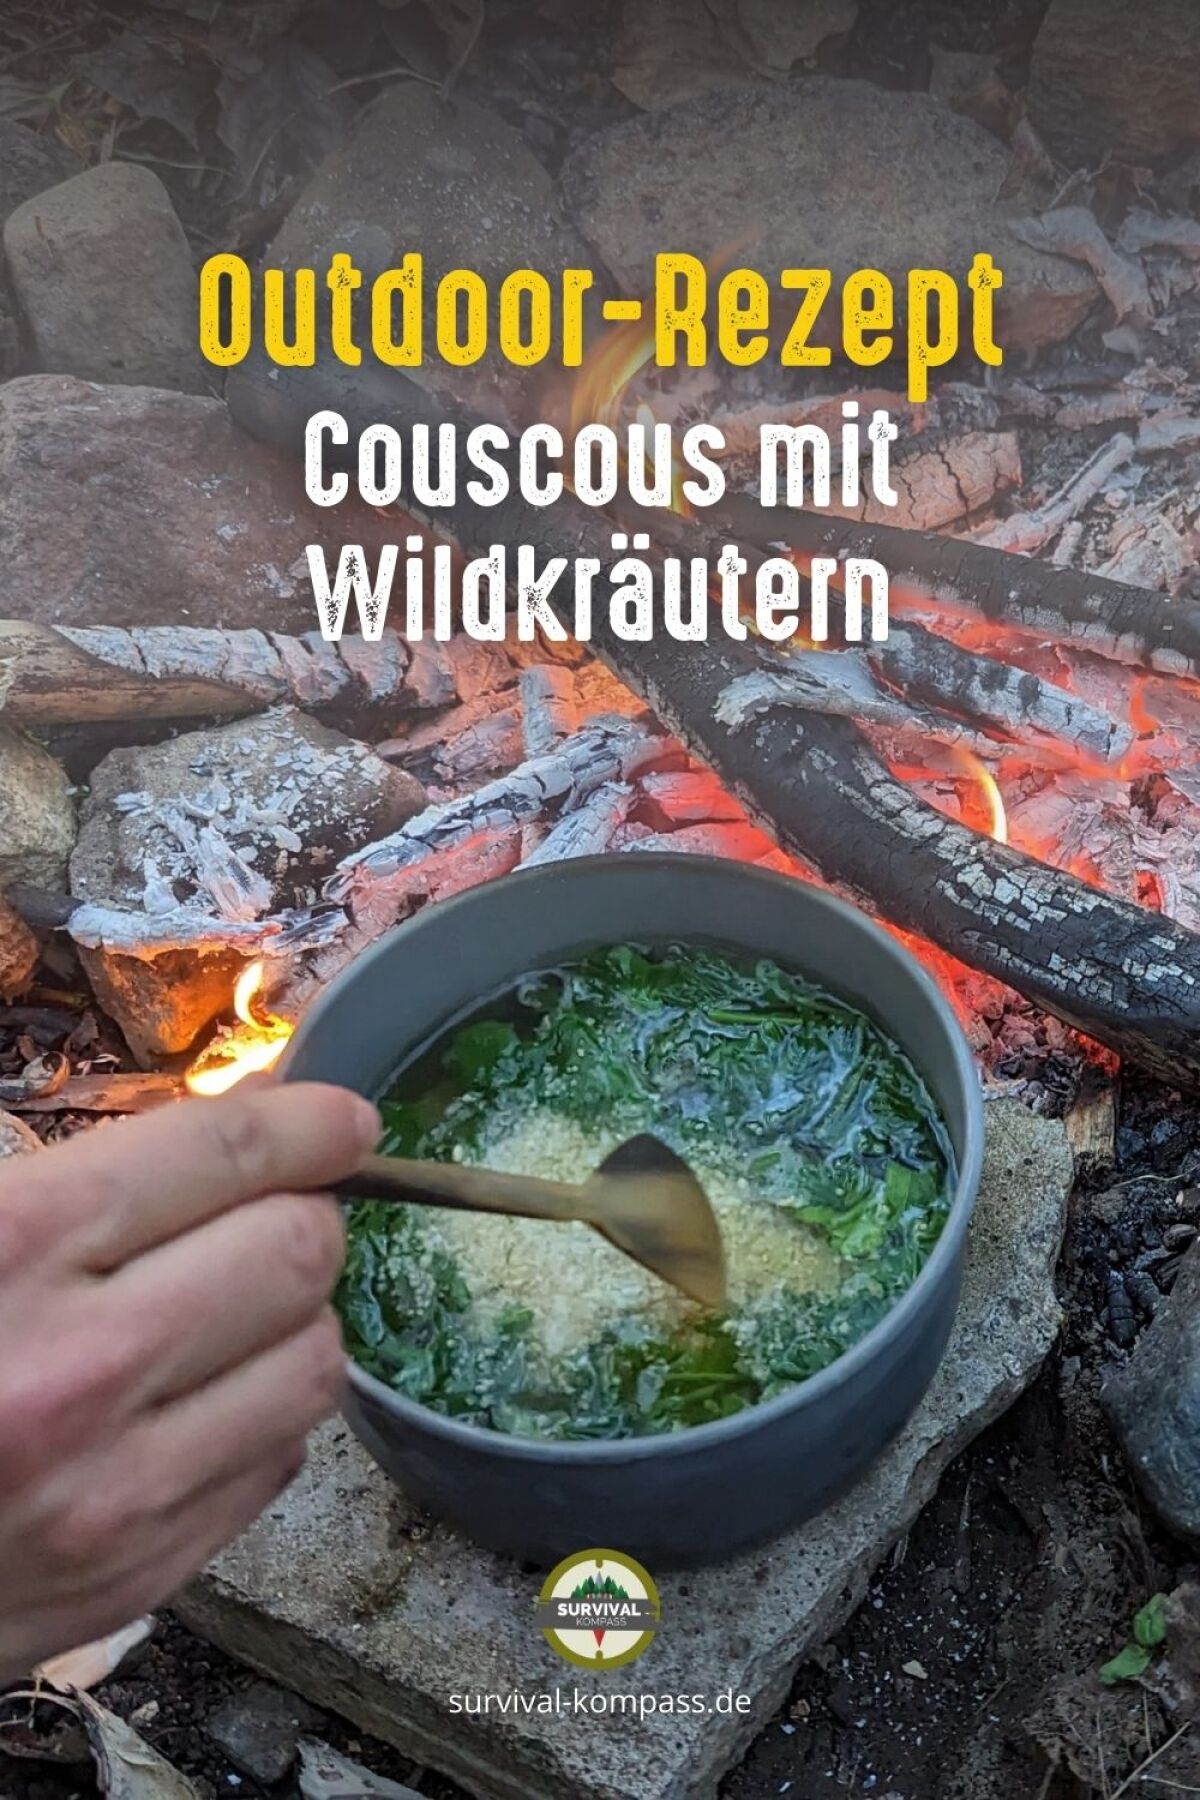 Couscous mit Wildkräutern